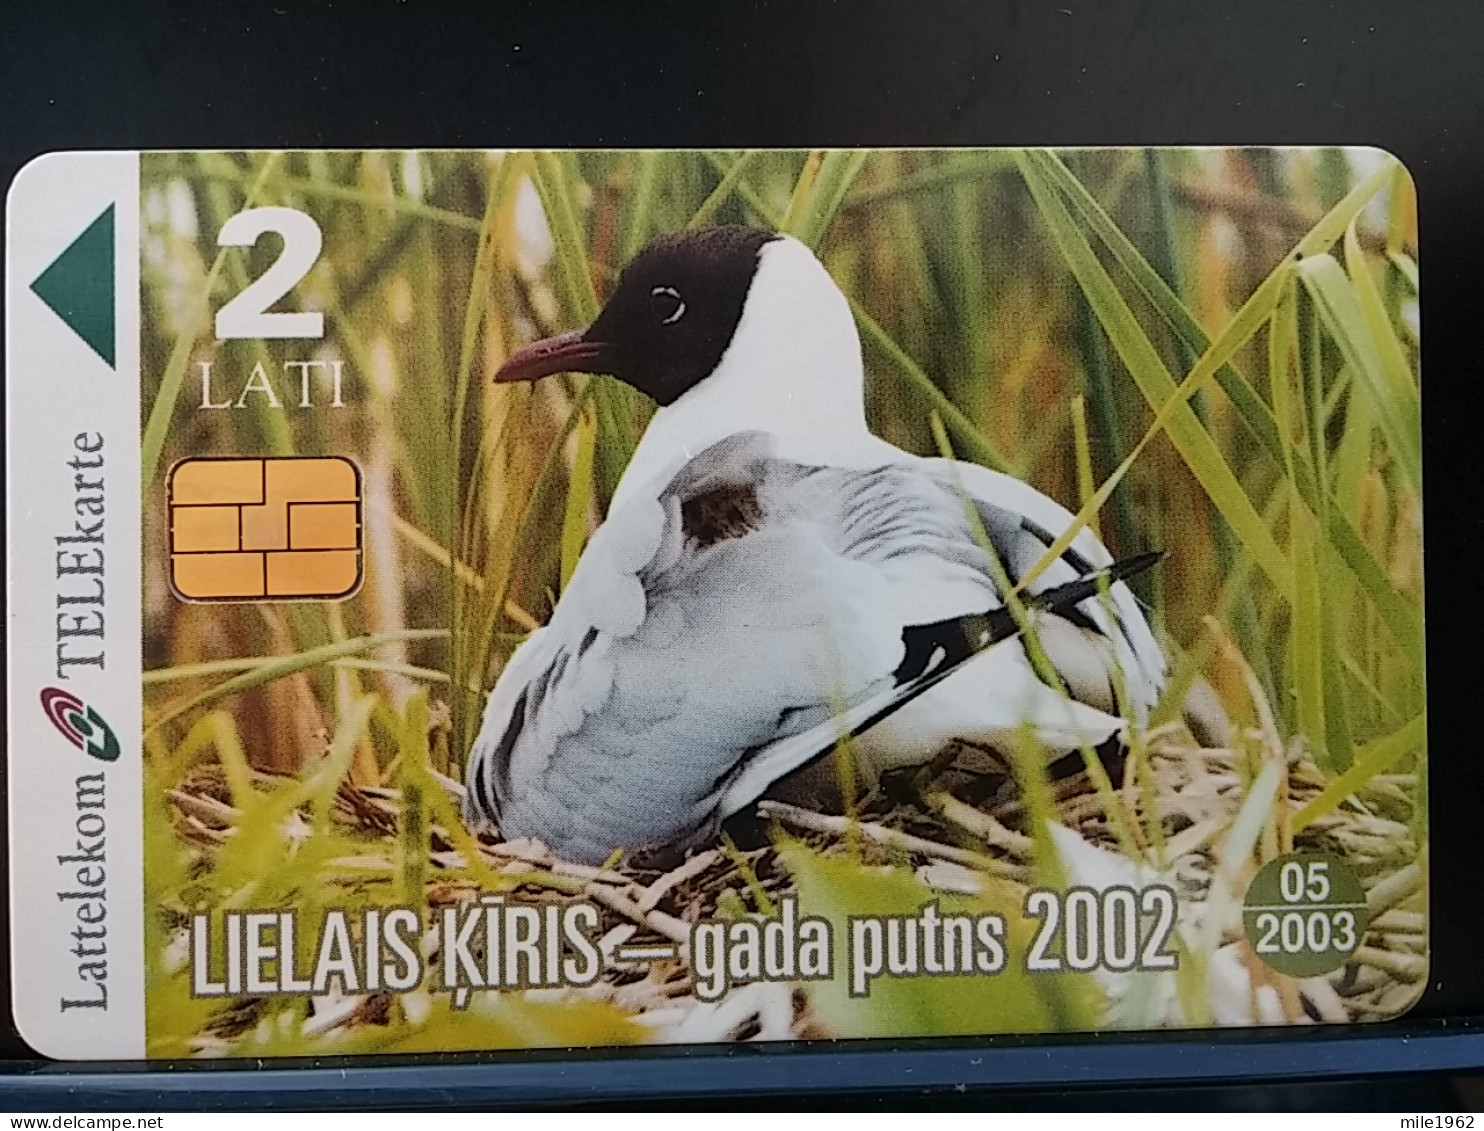 T-312 - LATVIA TELECARD, PHONECARD, ANIMAL, BIRD, OISEAU - Latvia